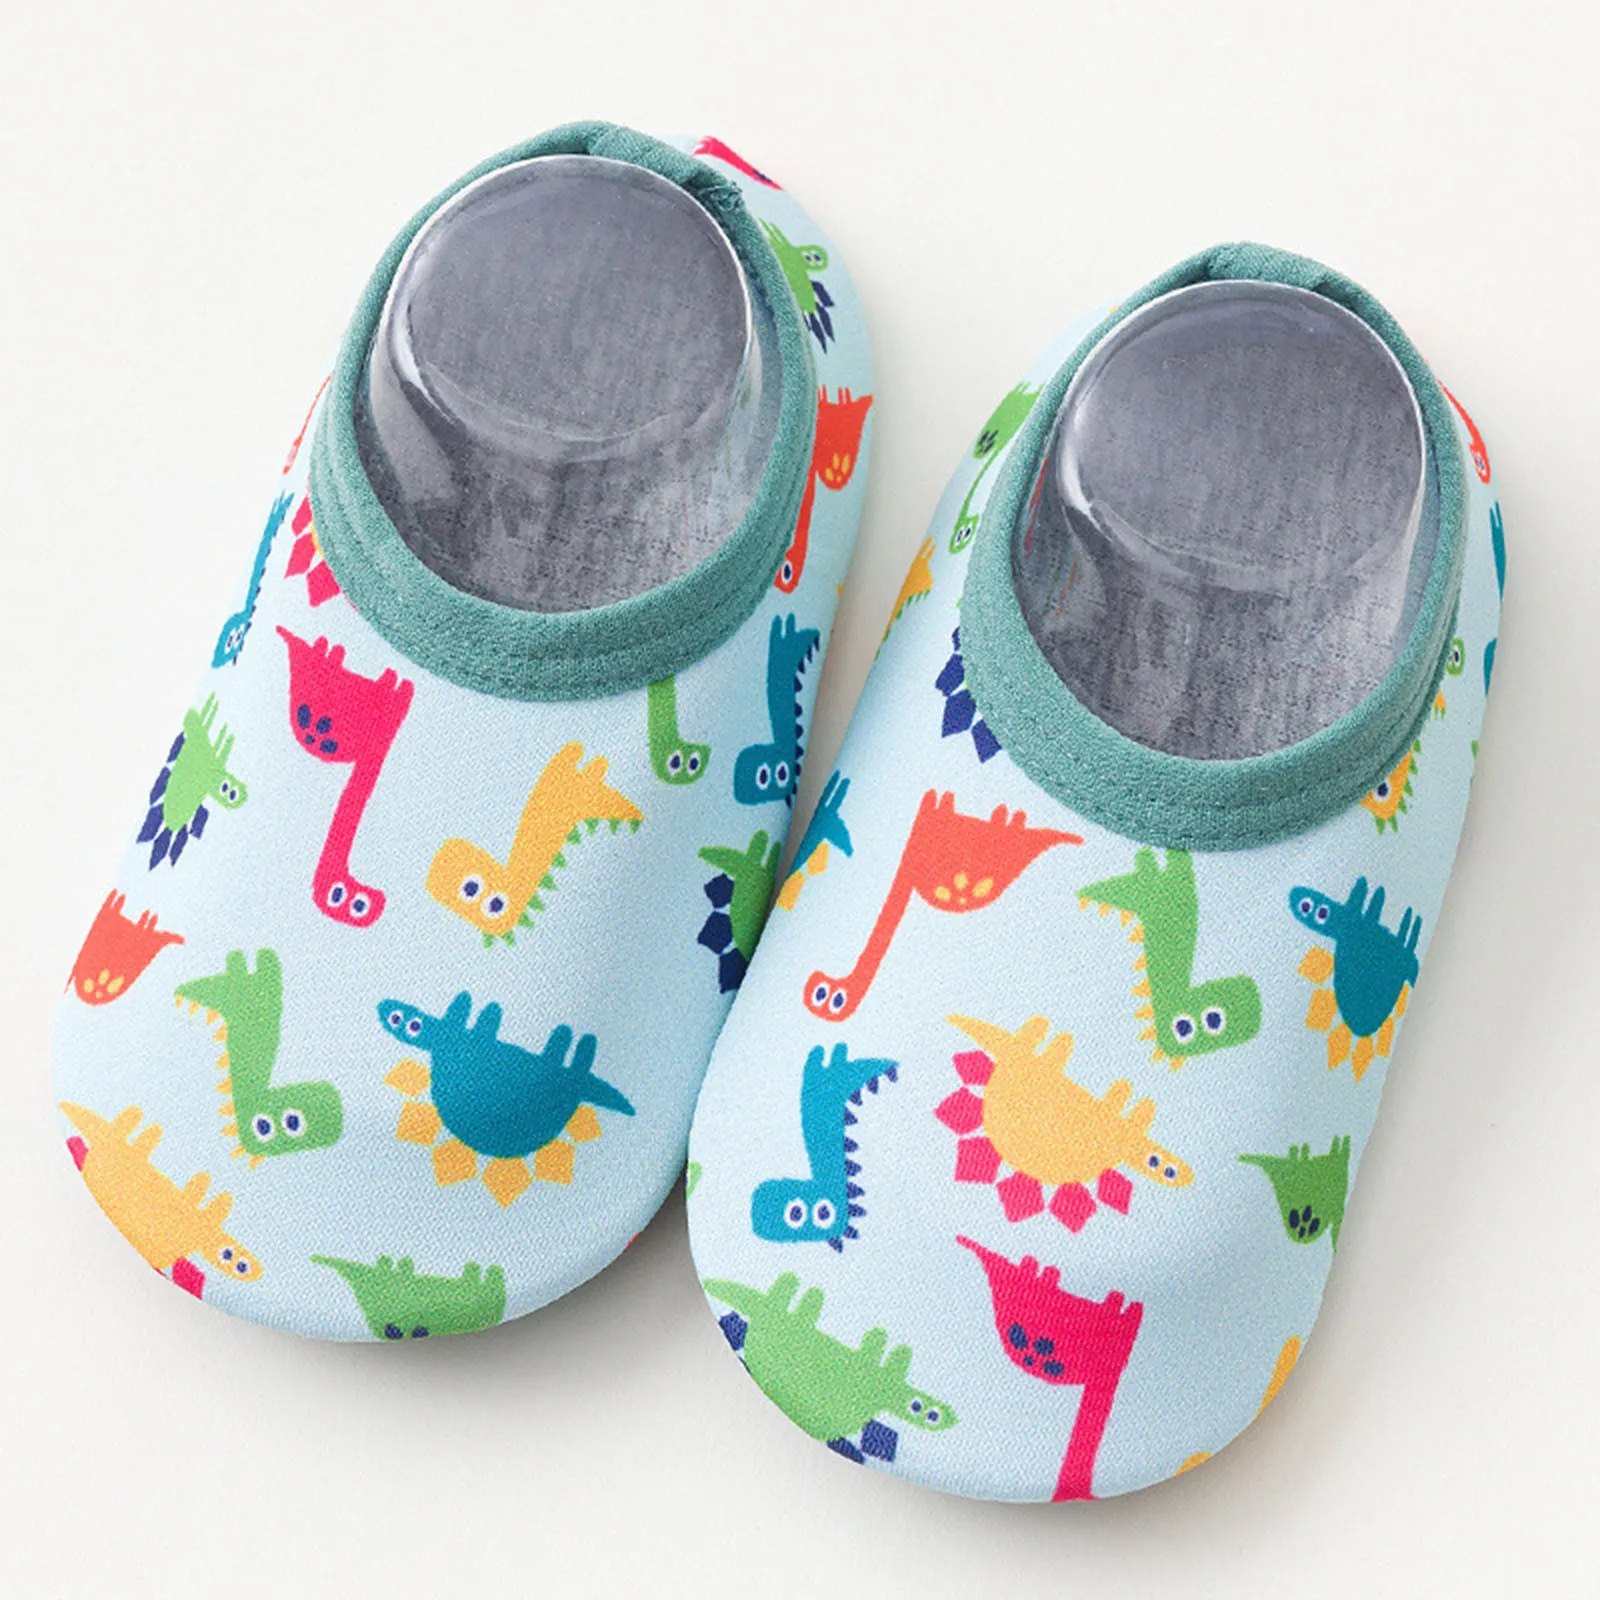 Light blue, 2-3 Years Cenlang Baby Kids Boys Girls Cartoon The Floor Socks Barefoot Aqua Socks Non-Slip Shoes